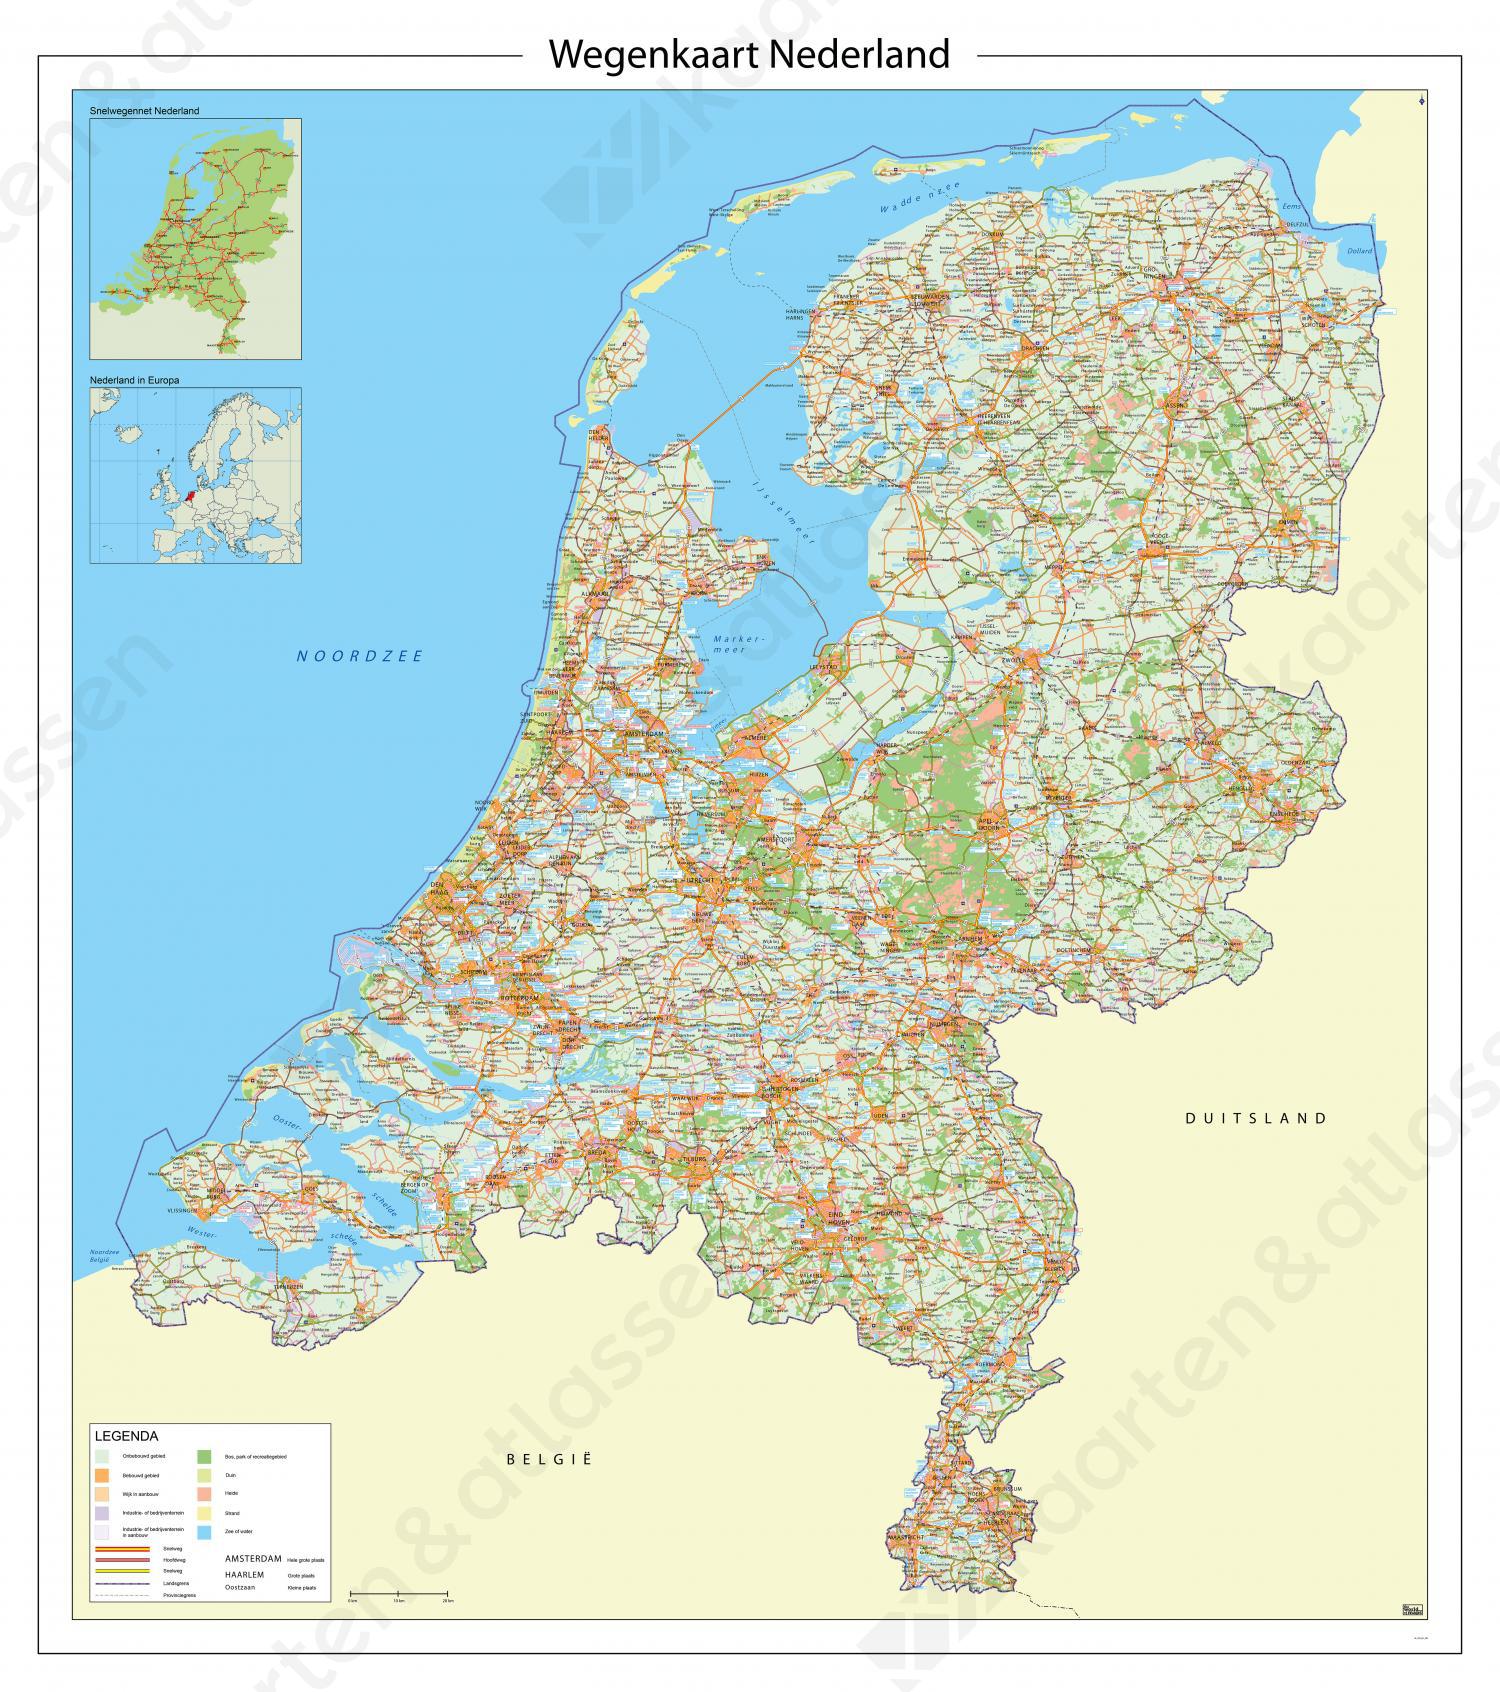 Digitale Wegenkaart Nederland met afritnamen 598